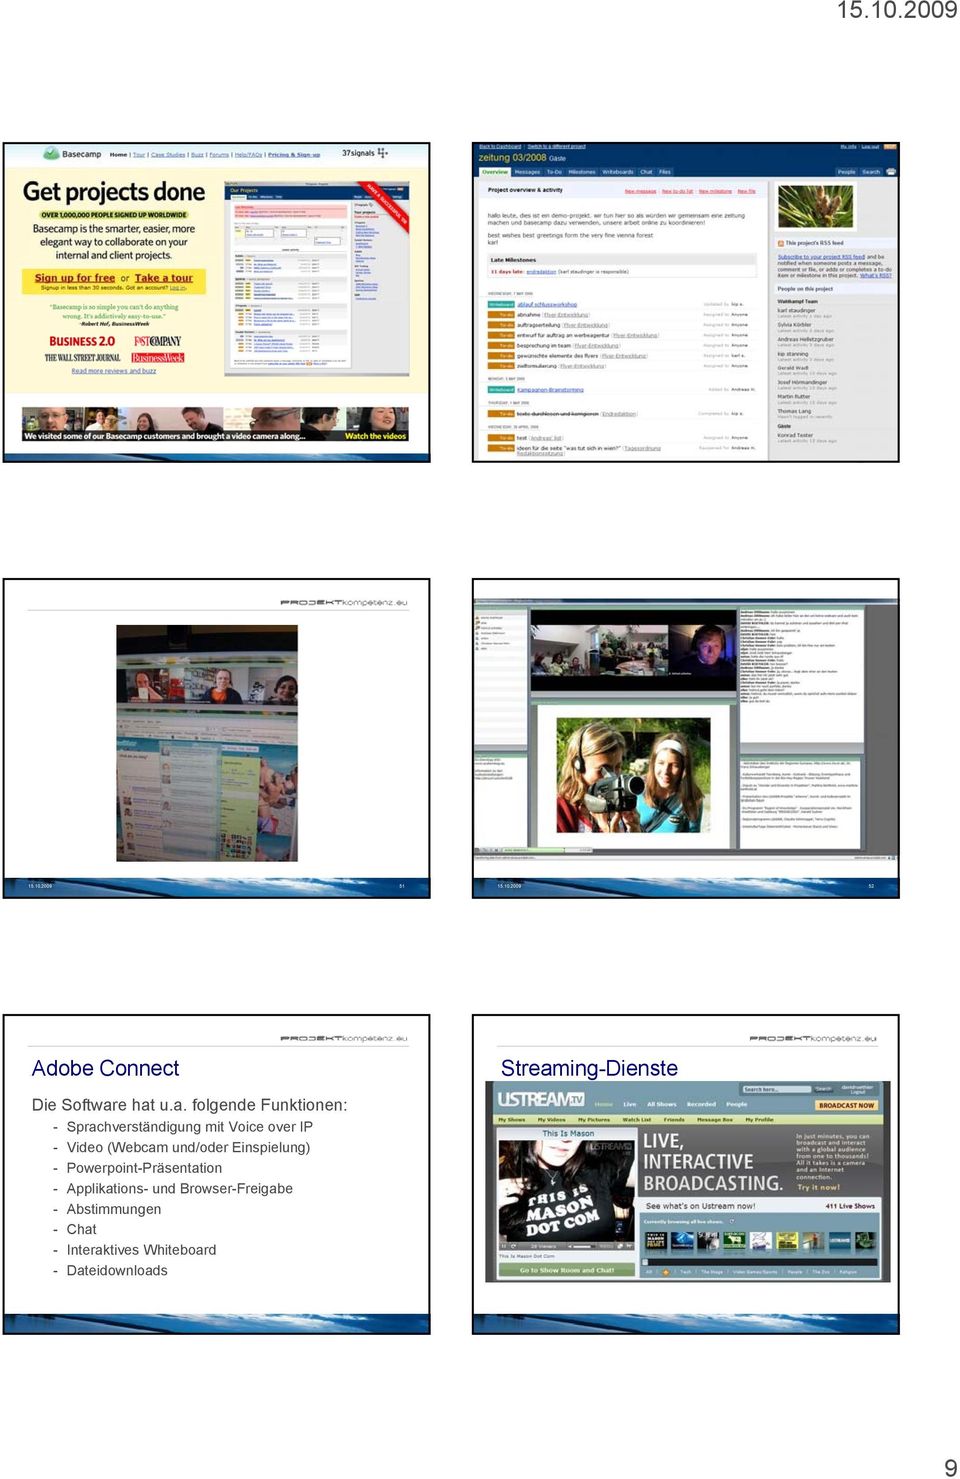 und/oder Einspielung) - Powerpoint-Präsentation - Applikations- und Browser-Freigabe